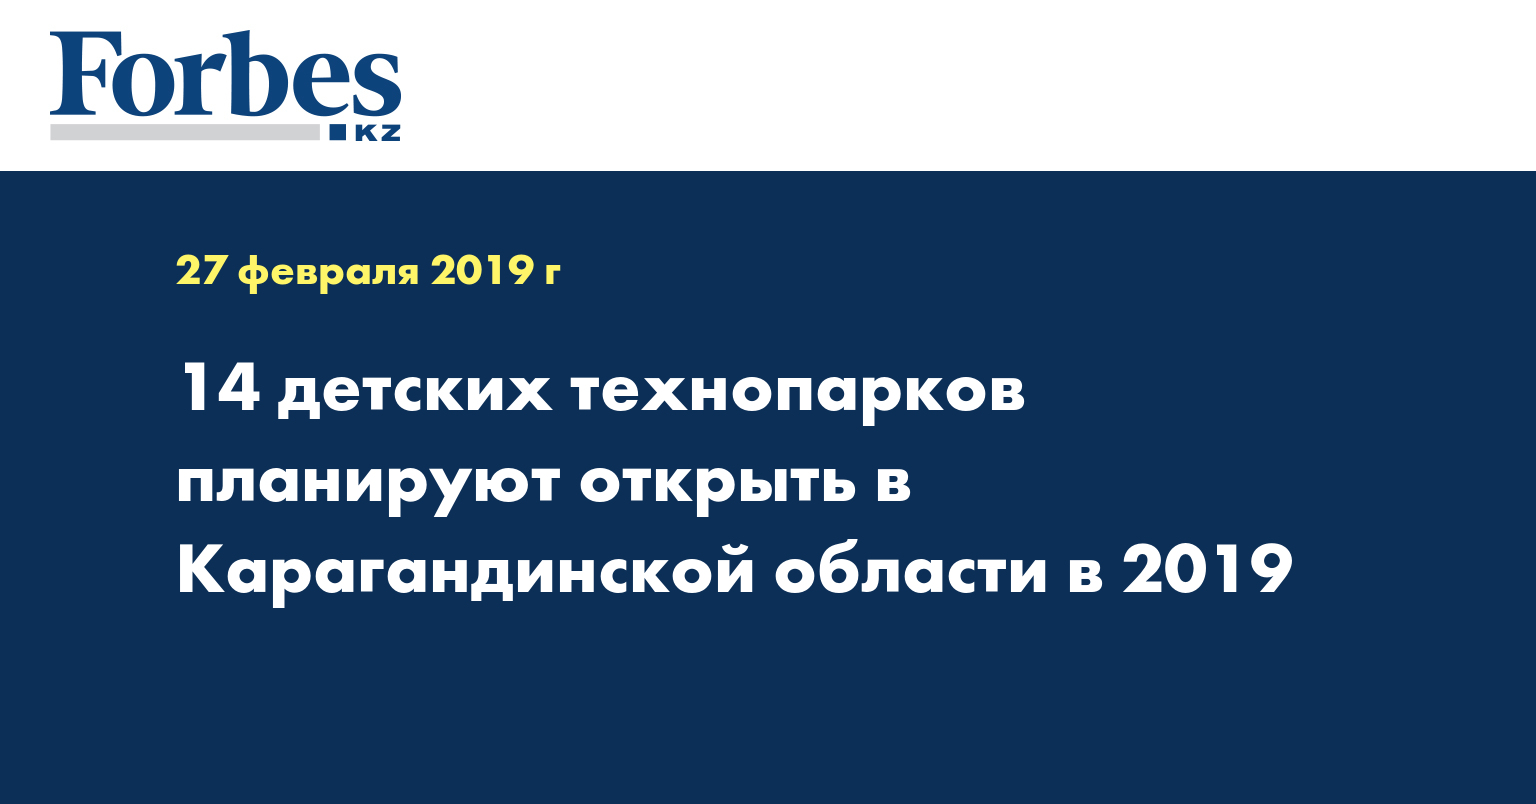 14 детских технопарков планируют открыть в Карагандинской области в 2019